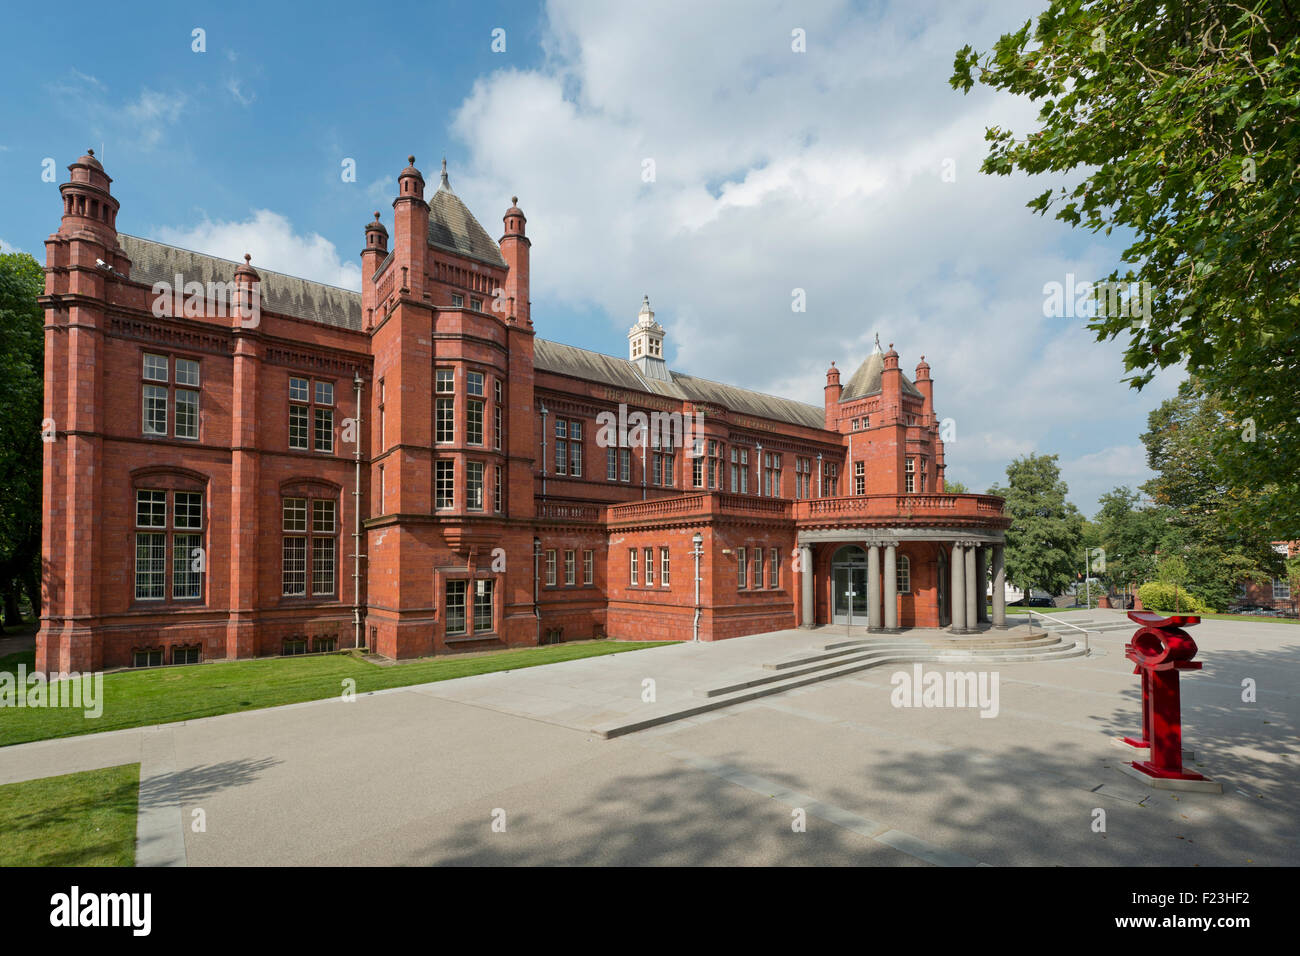 Récemment rénové, l'hôtel Whitworth Art Gallery situé sur la route d'Oxford campus de l'Université de Manchester. Banque D'Images